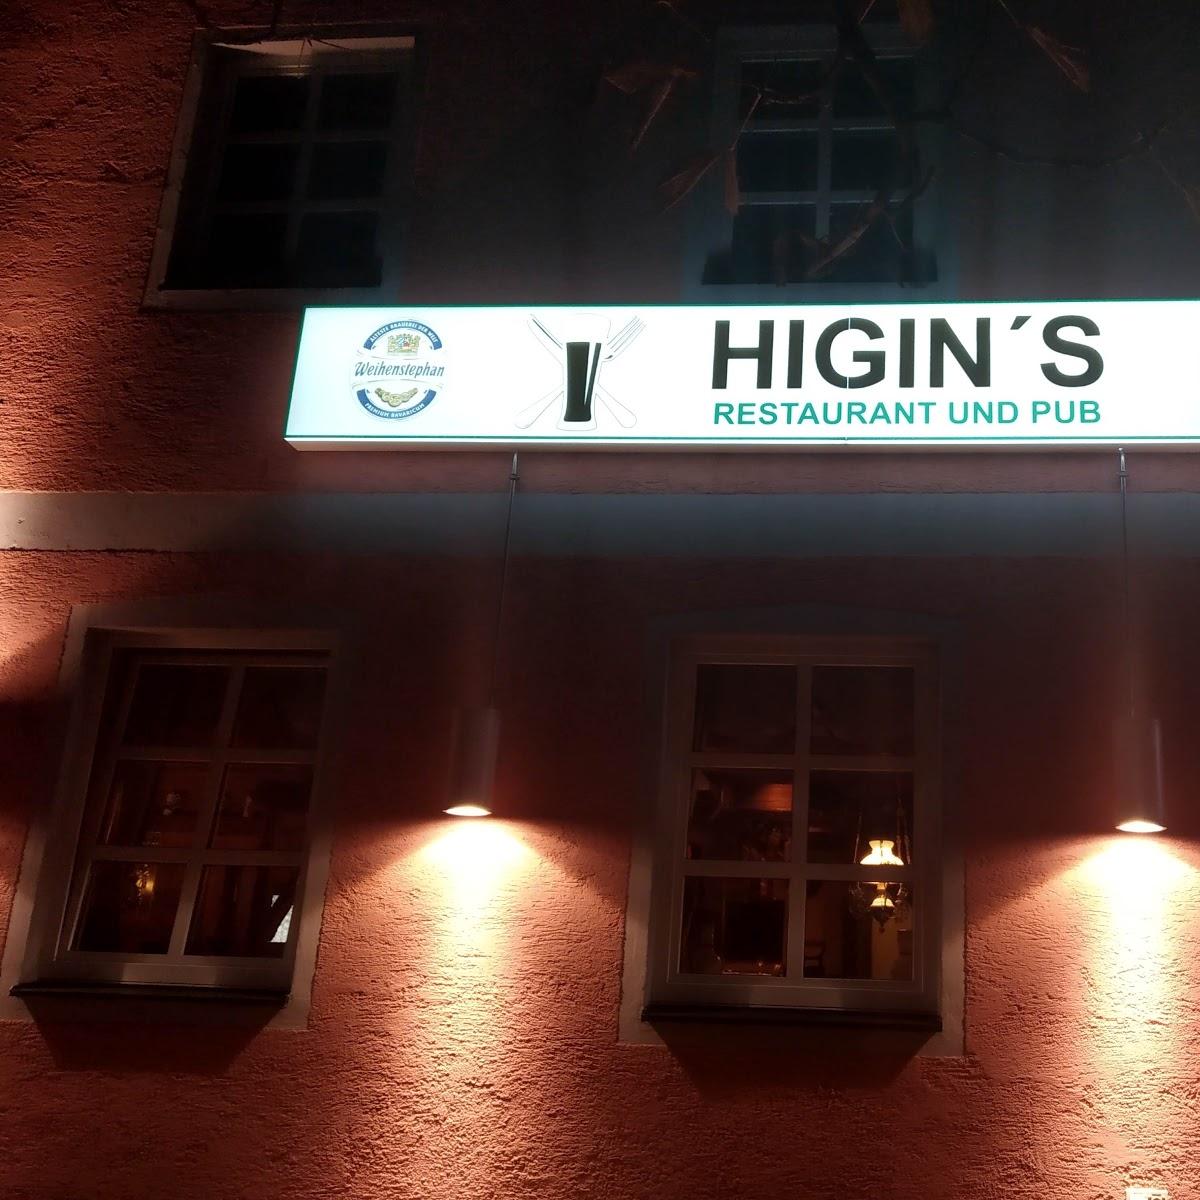 Restaurant "Higin‘s Restaurant & Pub" in  Allershausen